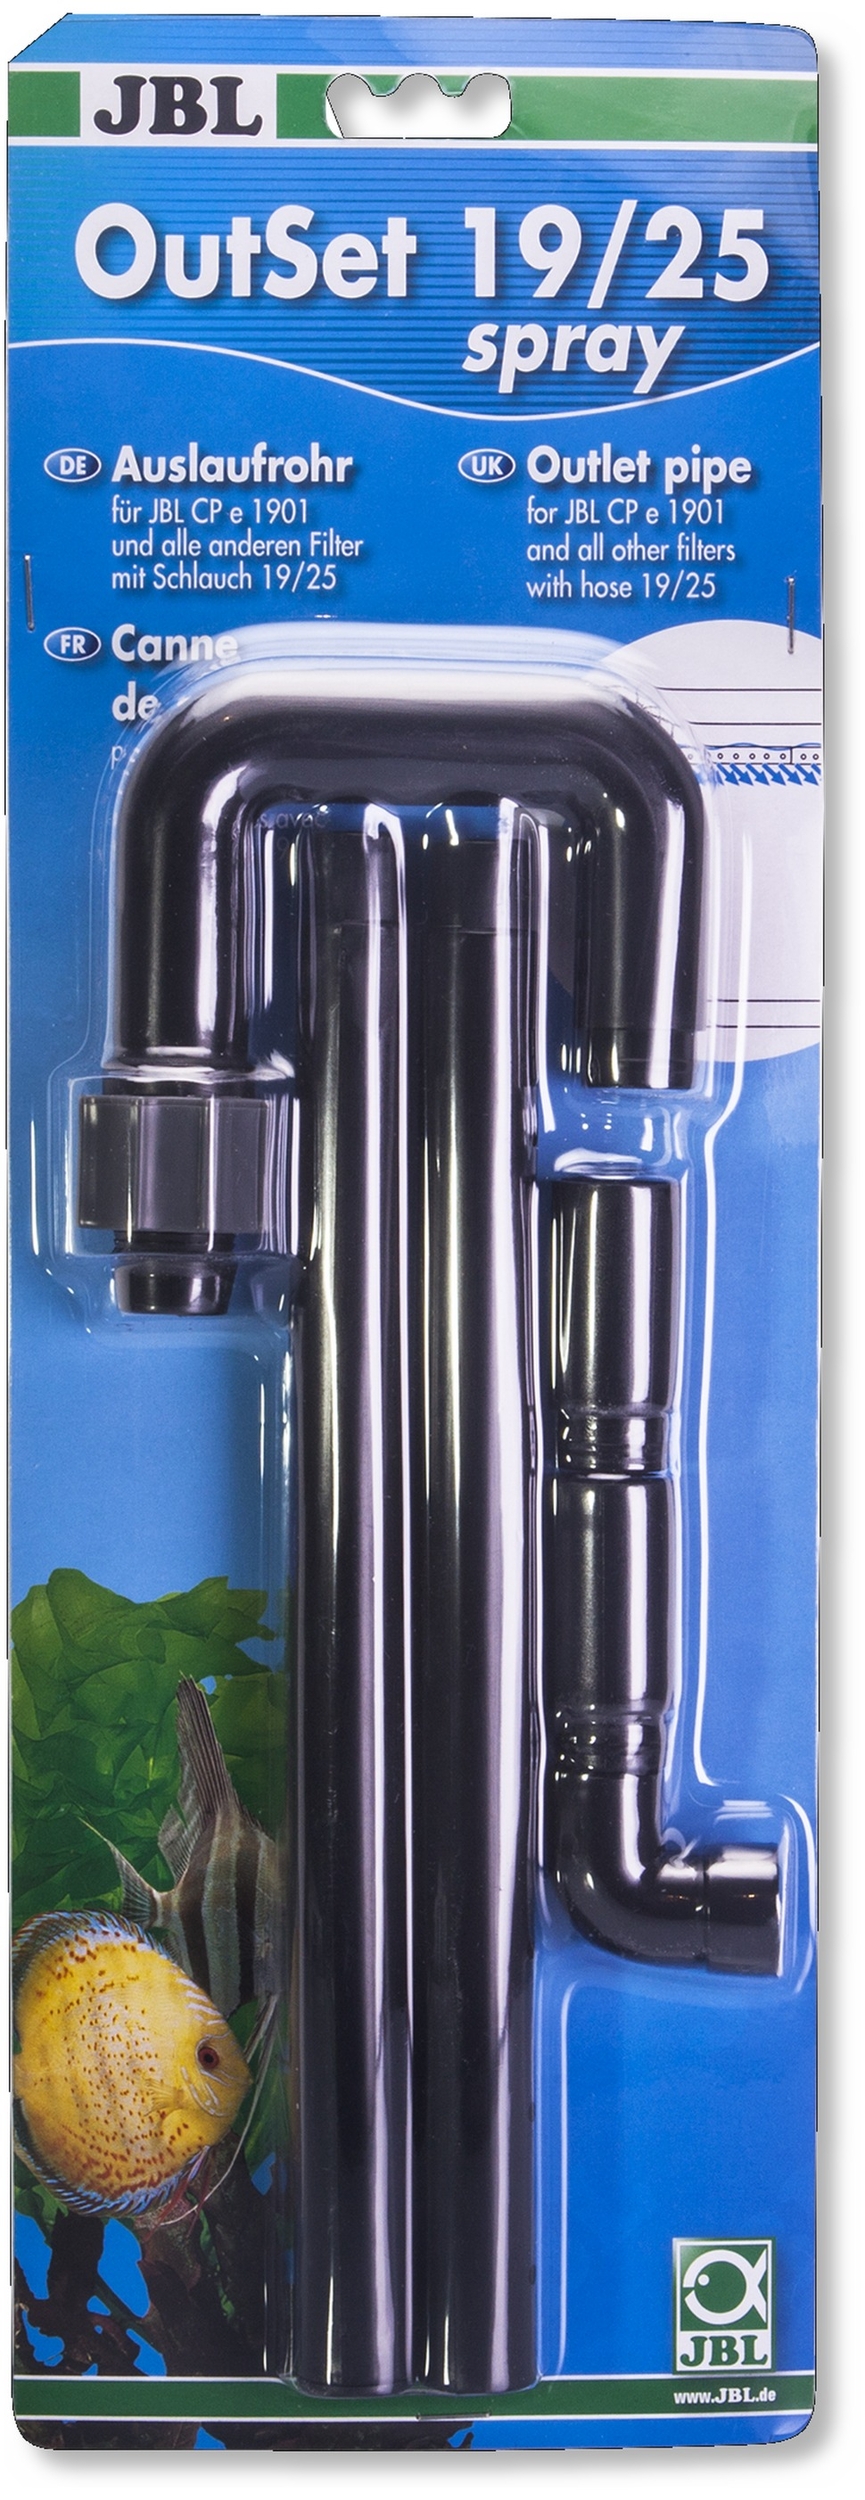 JBL OutSet Spray 19/25 canne de rejet universelle vaporisatrice pour tuyau 19/25 mm et filtres CristalProfi e190x